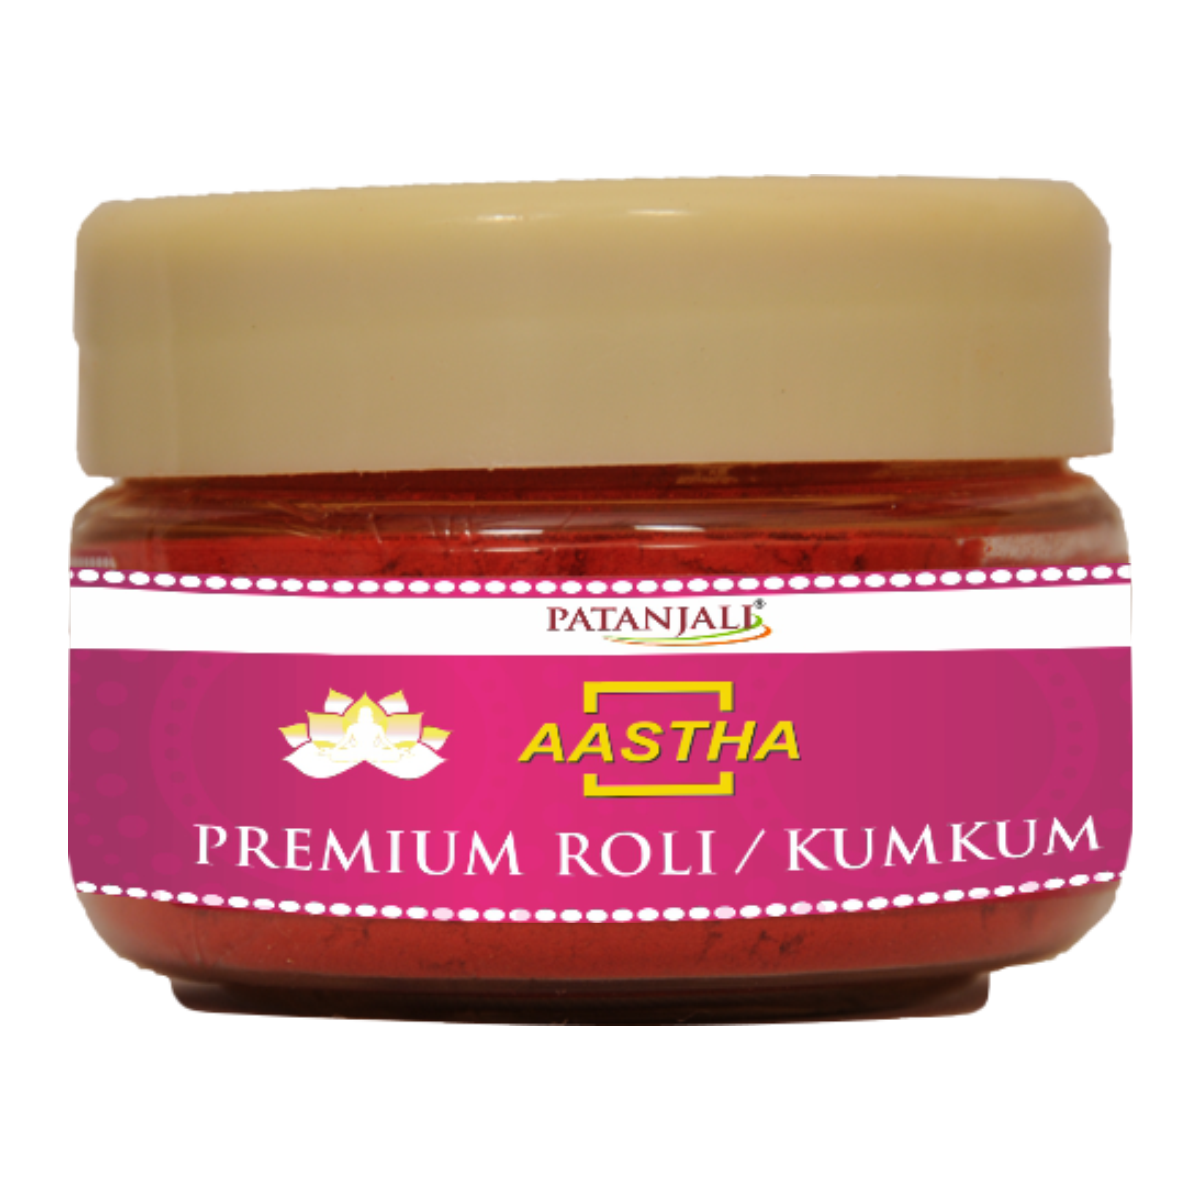 Patanjali Aastha Premium Roli / Kumkum